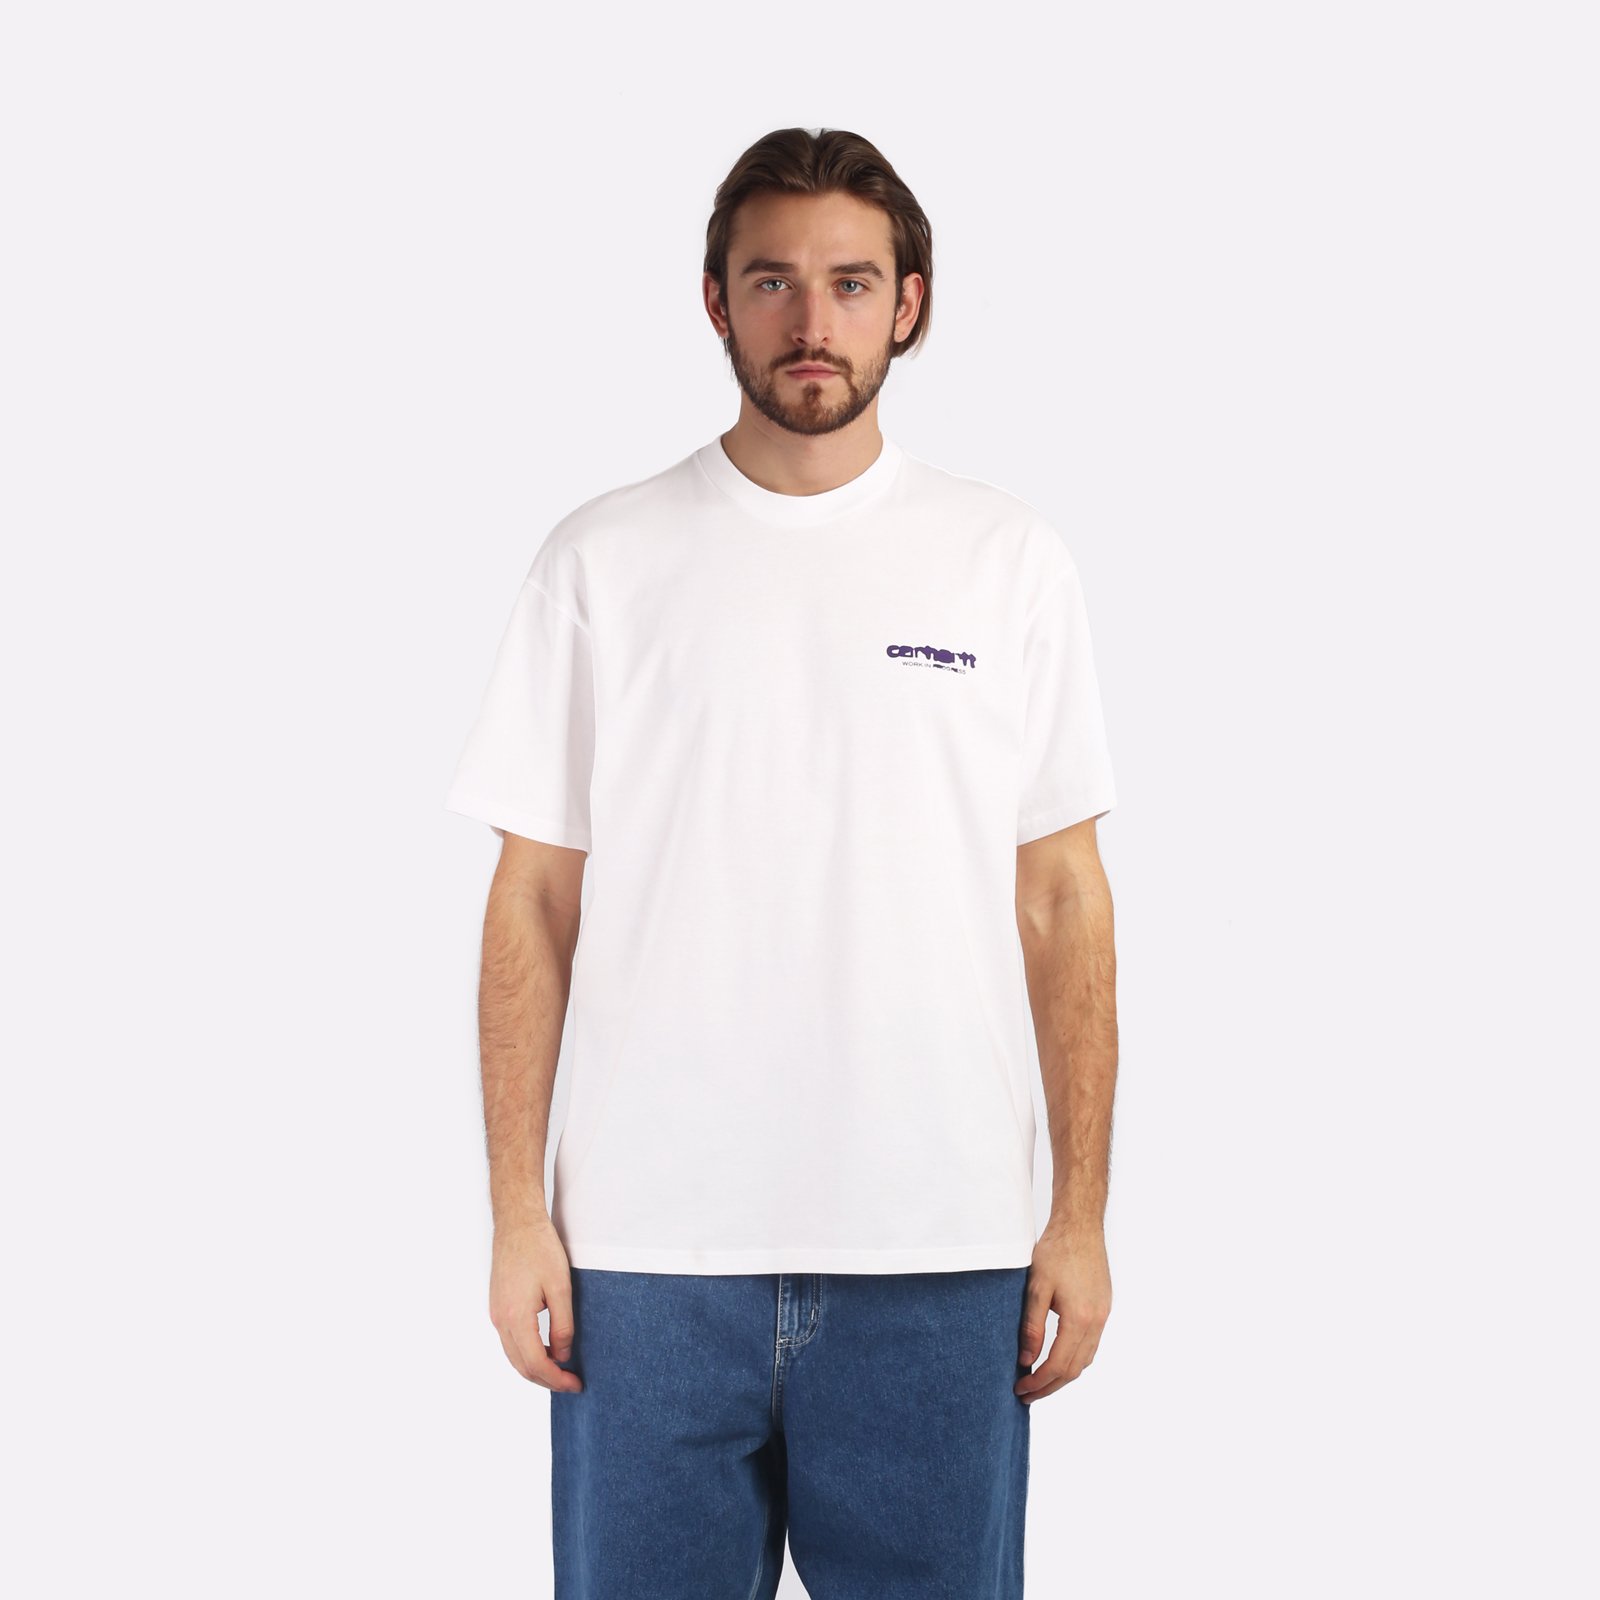 мужская белая футболка Carhartt WIP S/S Ink Bleed T-Shirt I032878-white/tyrian - цена, описание, фото 1